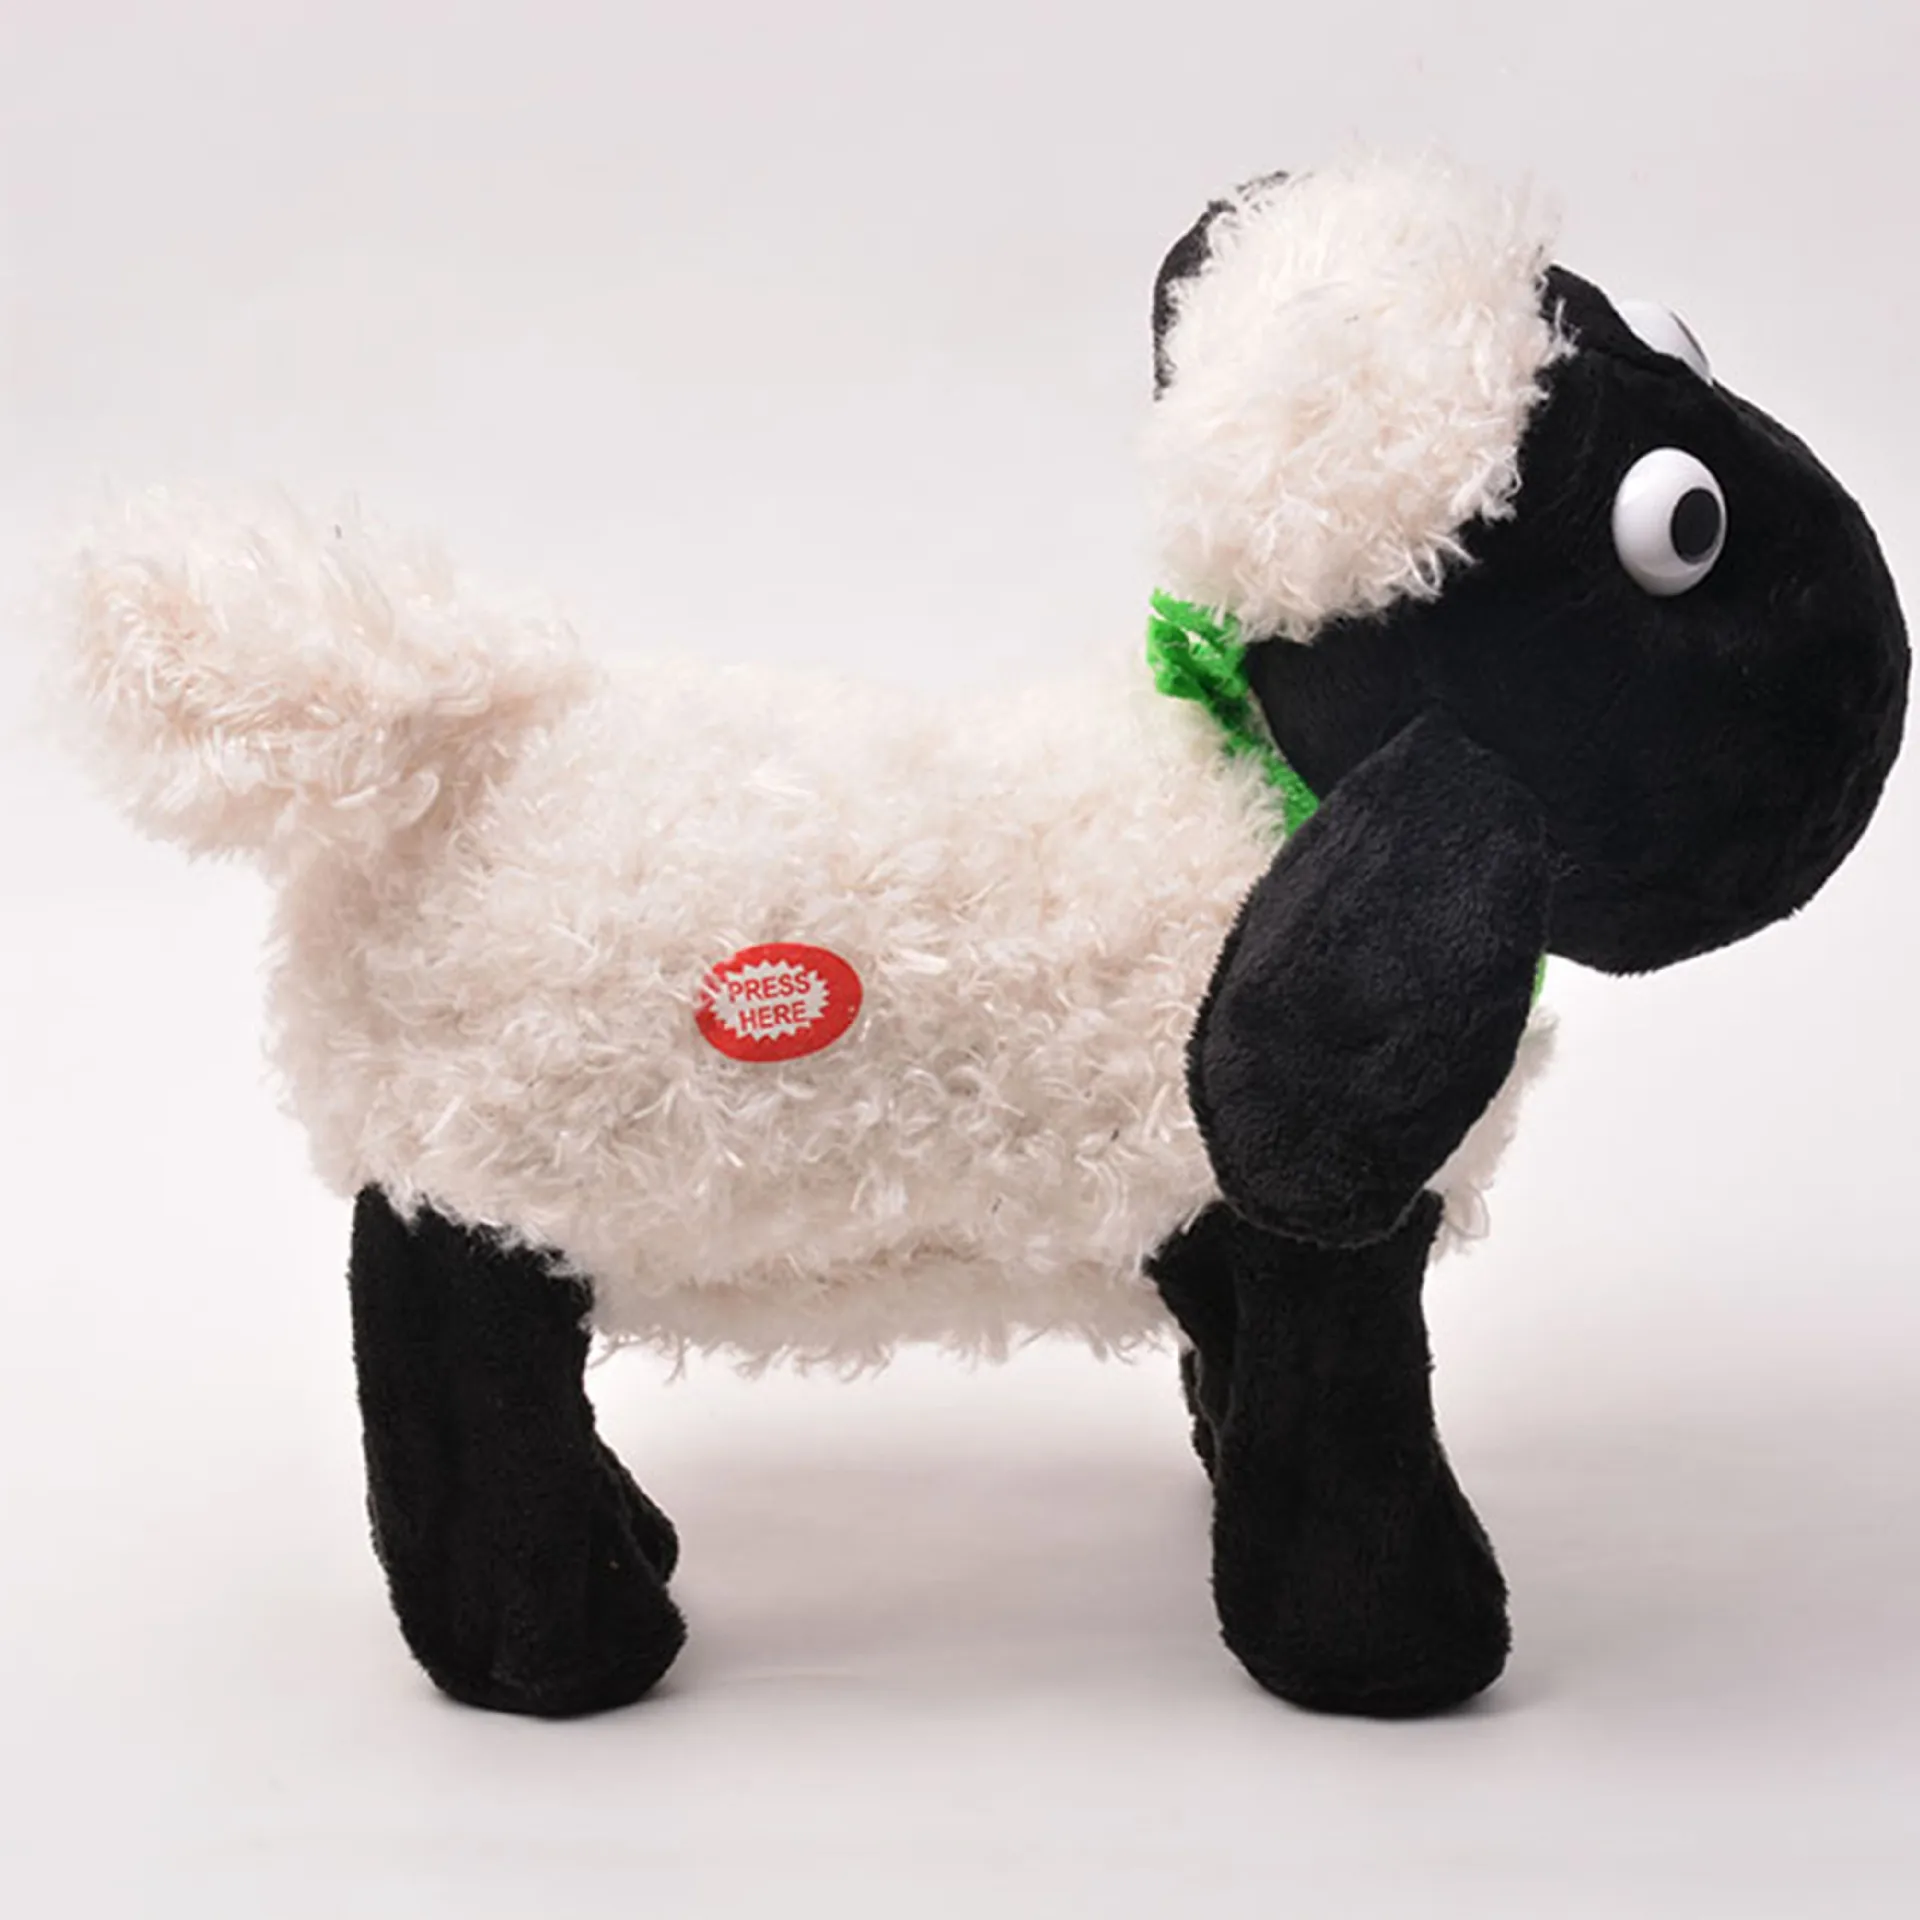 Электронные игрушки высокого качества смешное управление звуком электронные детские игрушки плюшевые Подарочные игрушки овцы для детей подарки на день рождения